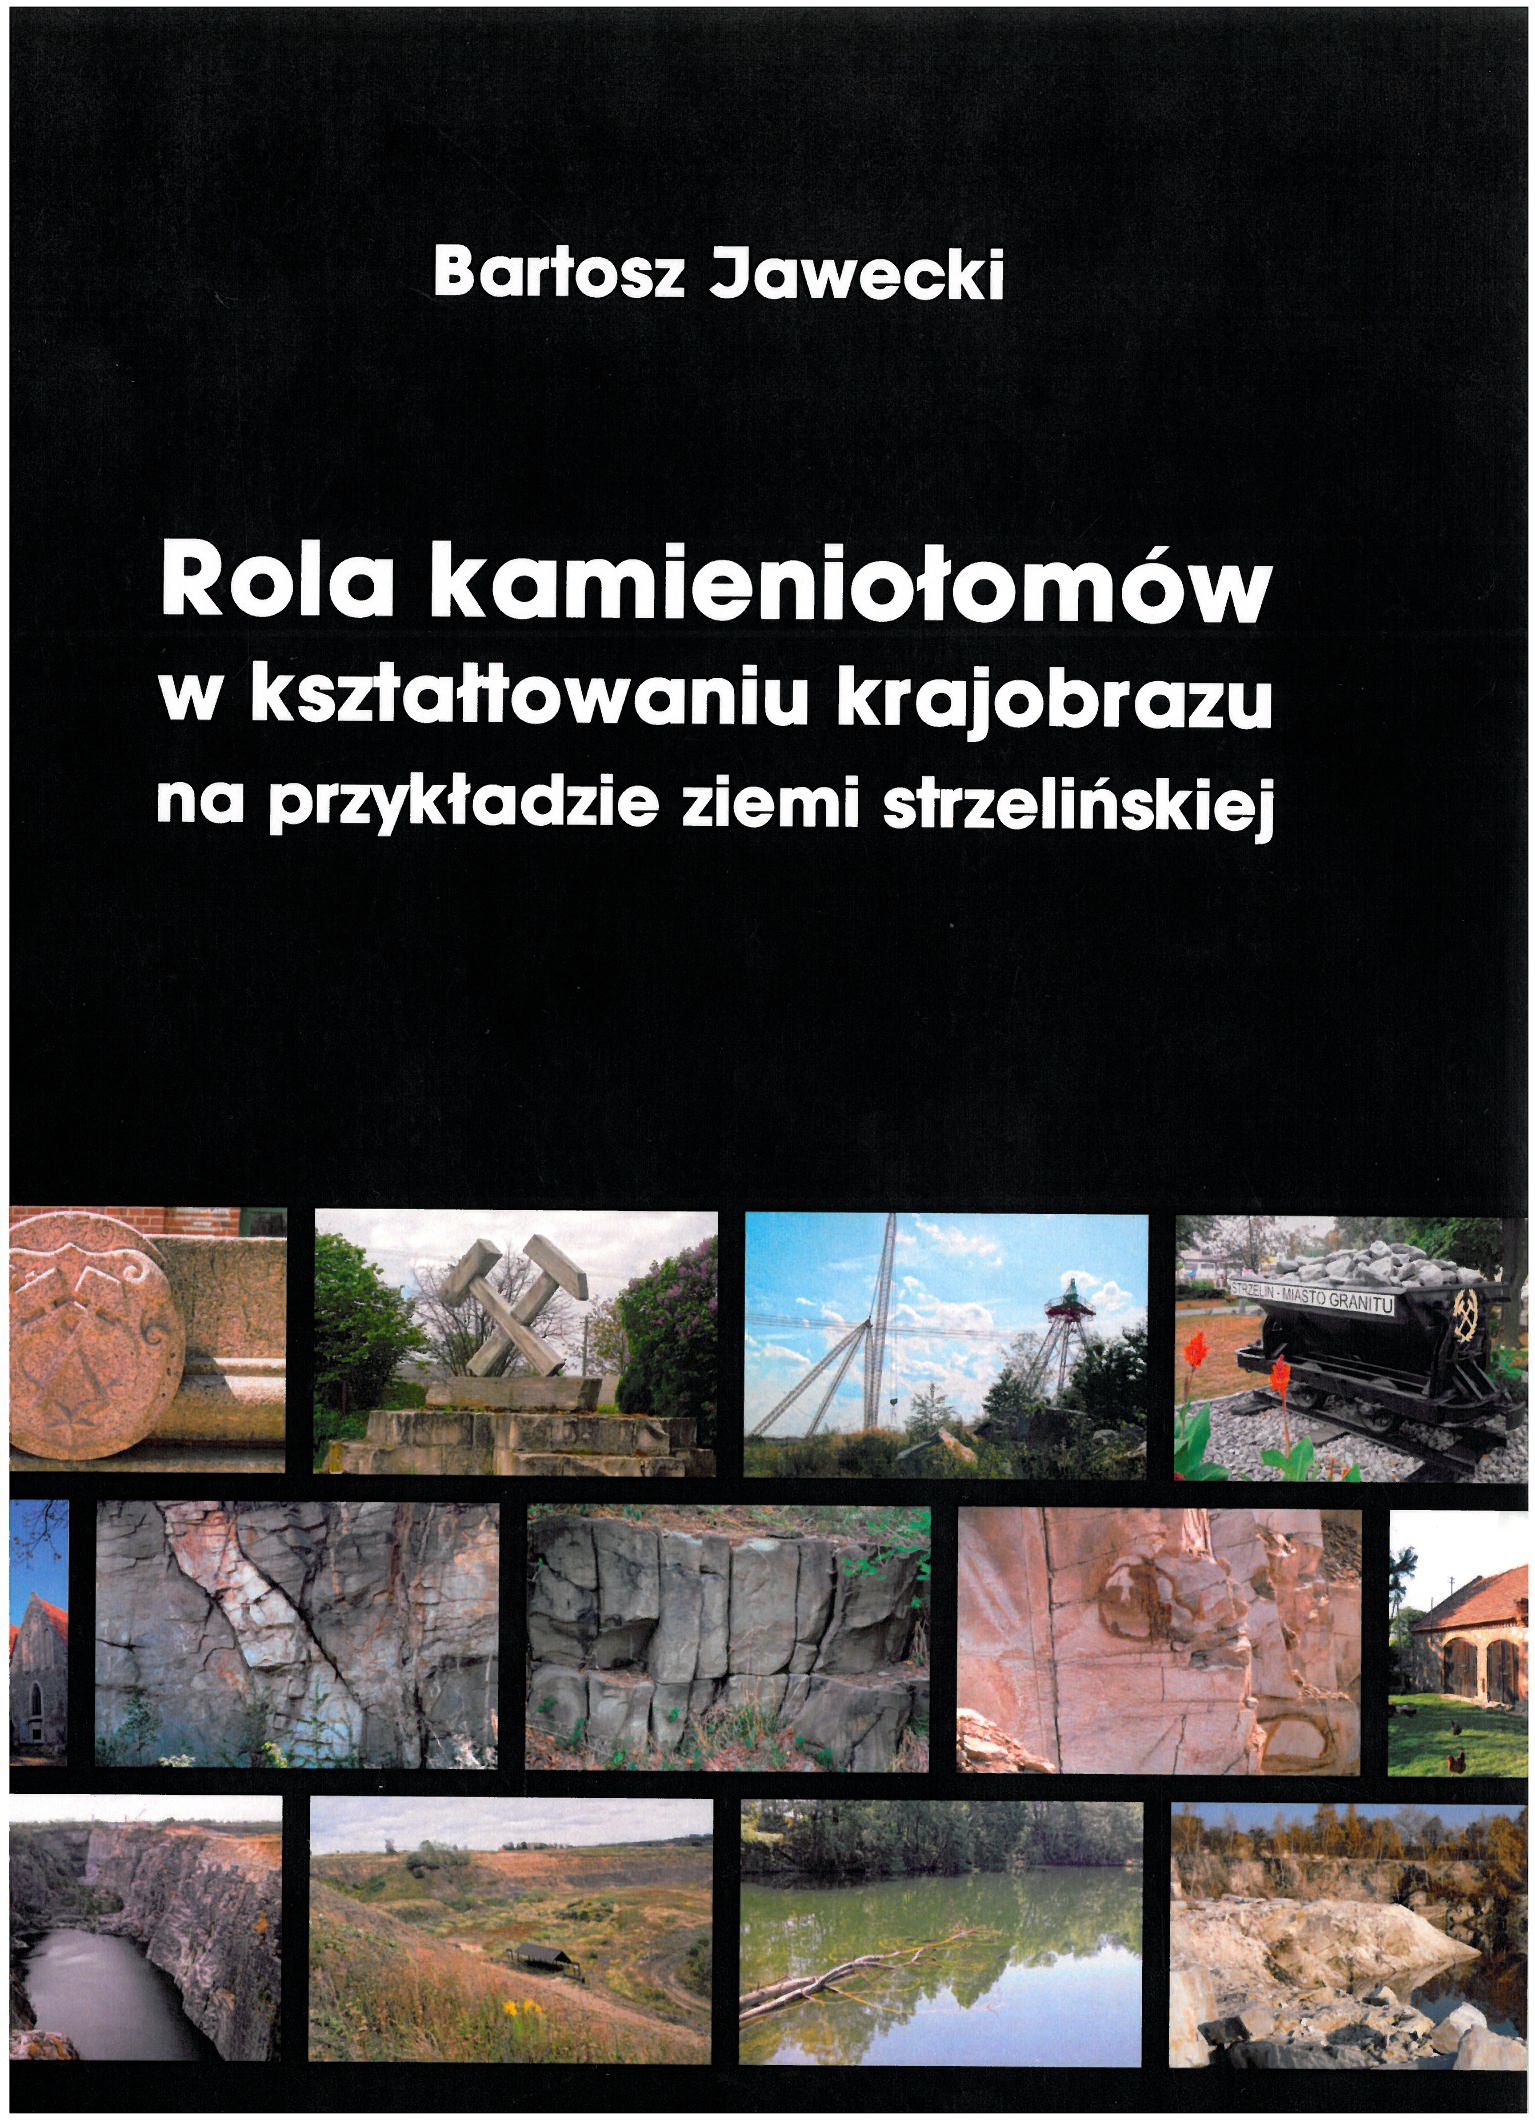 okładka książki Rola kamieniołomów w kształtowaniu krajobrazu na przykładzie ziemi strzelińskiej